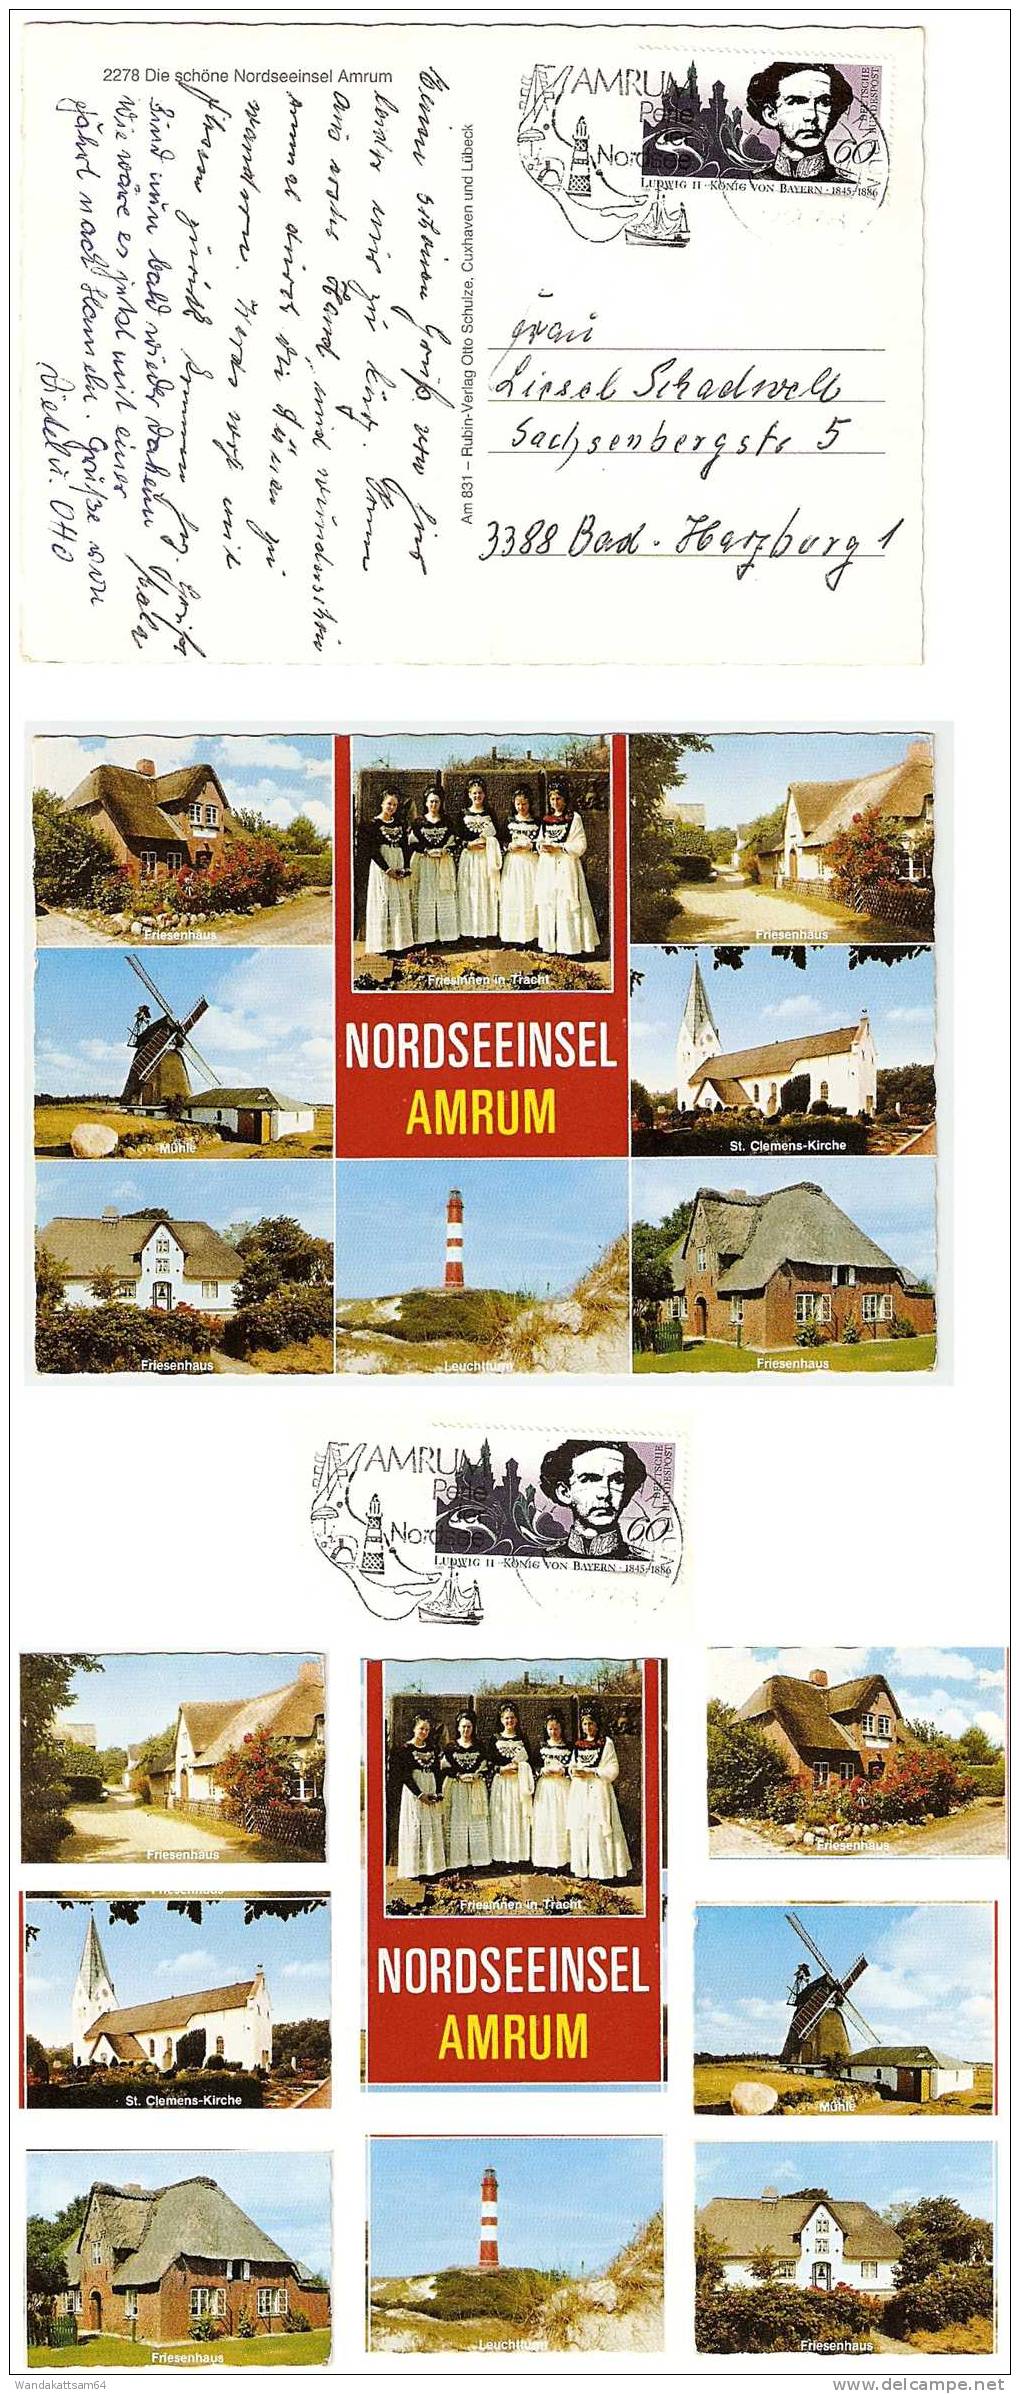 AK831NORDSEEINSEL  AMRUM Mehrbildkarte 8 Bilder Mühle Friesenhaus Leuchtturm Kirche Tracht 2278 NEBEL AMRUM Werbestempel - Nordfriesland